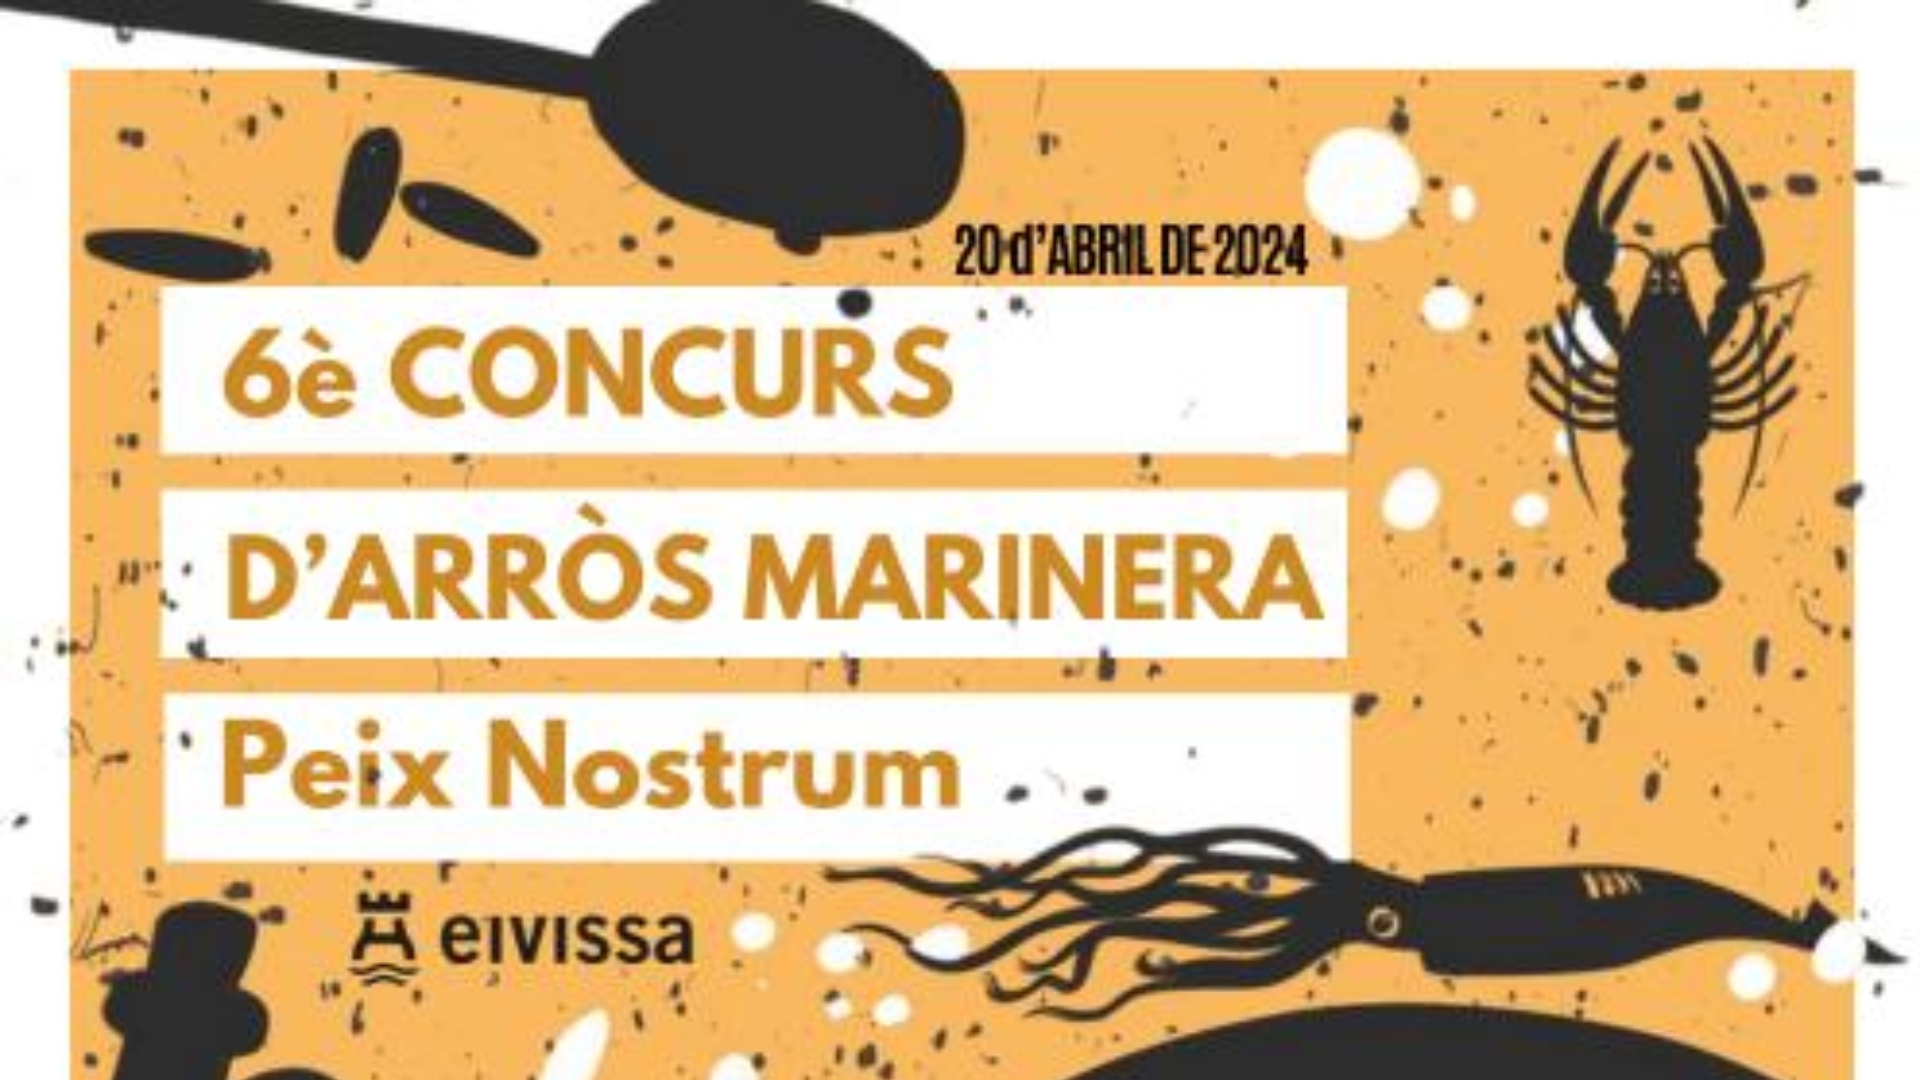 Cartel promocional del concurso de arroz marinera de Ibiza ciudad.